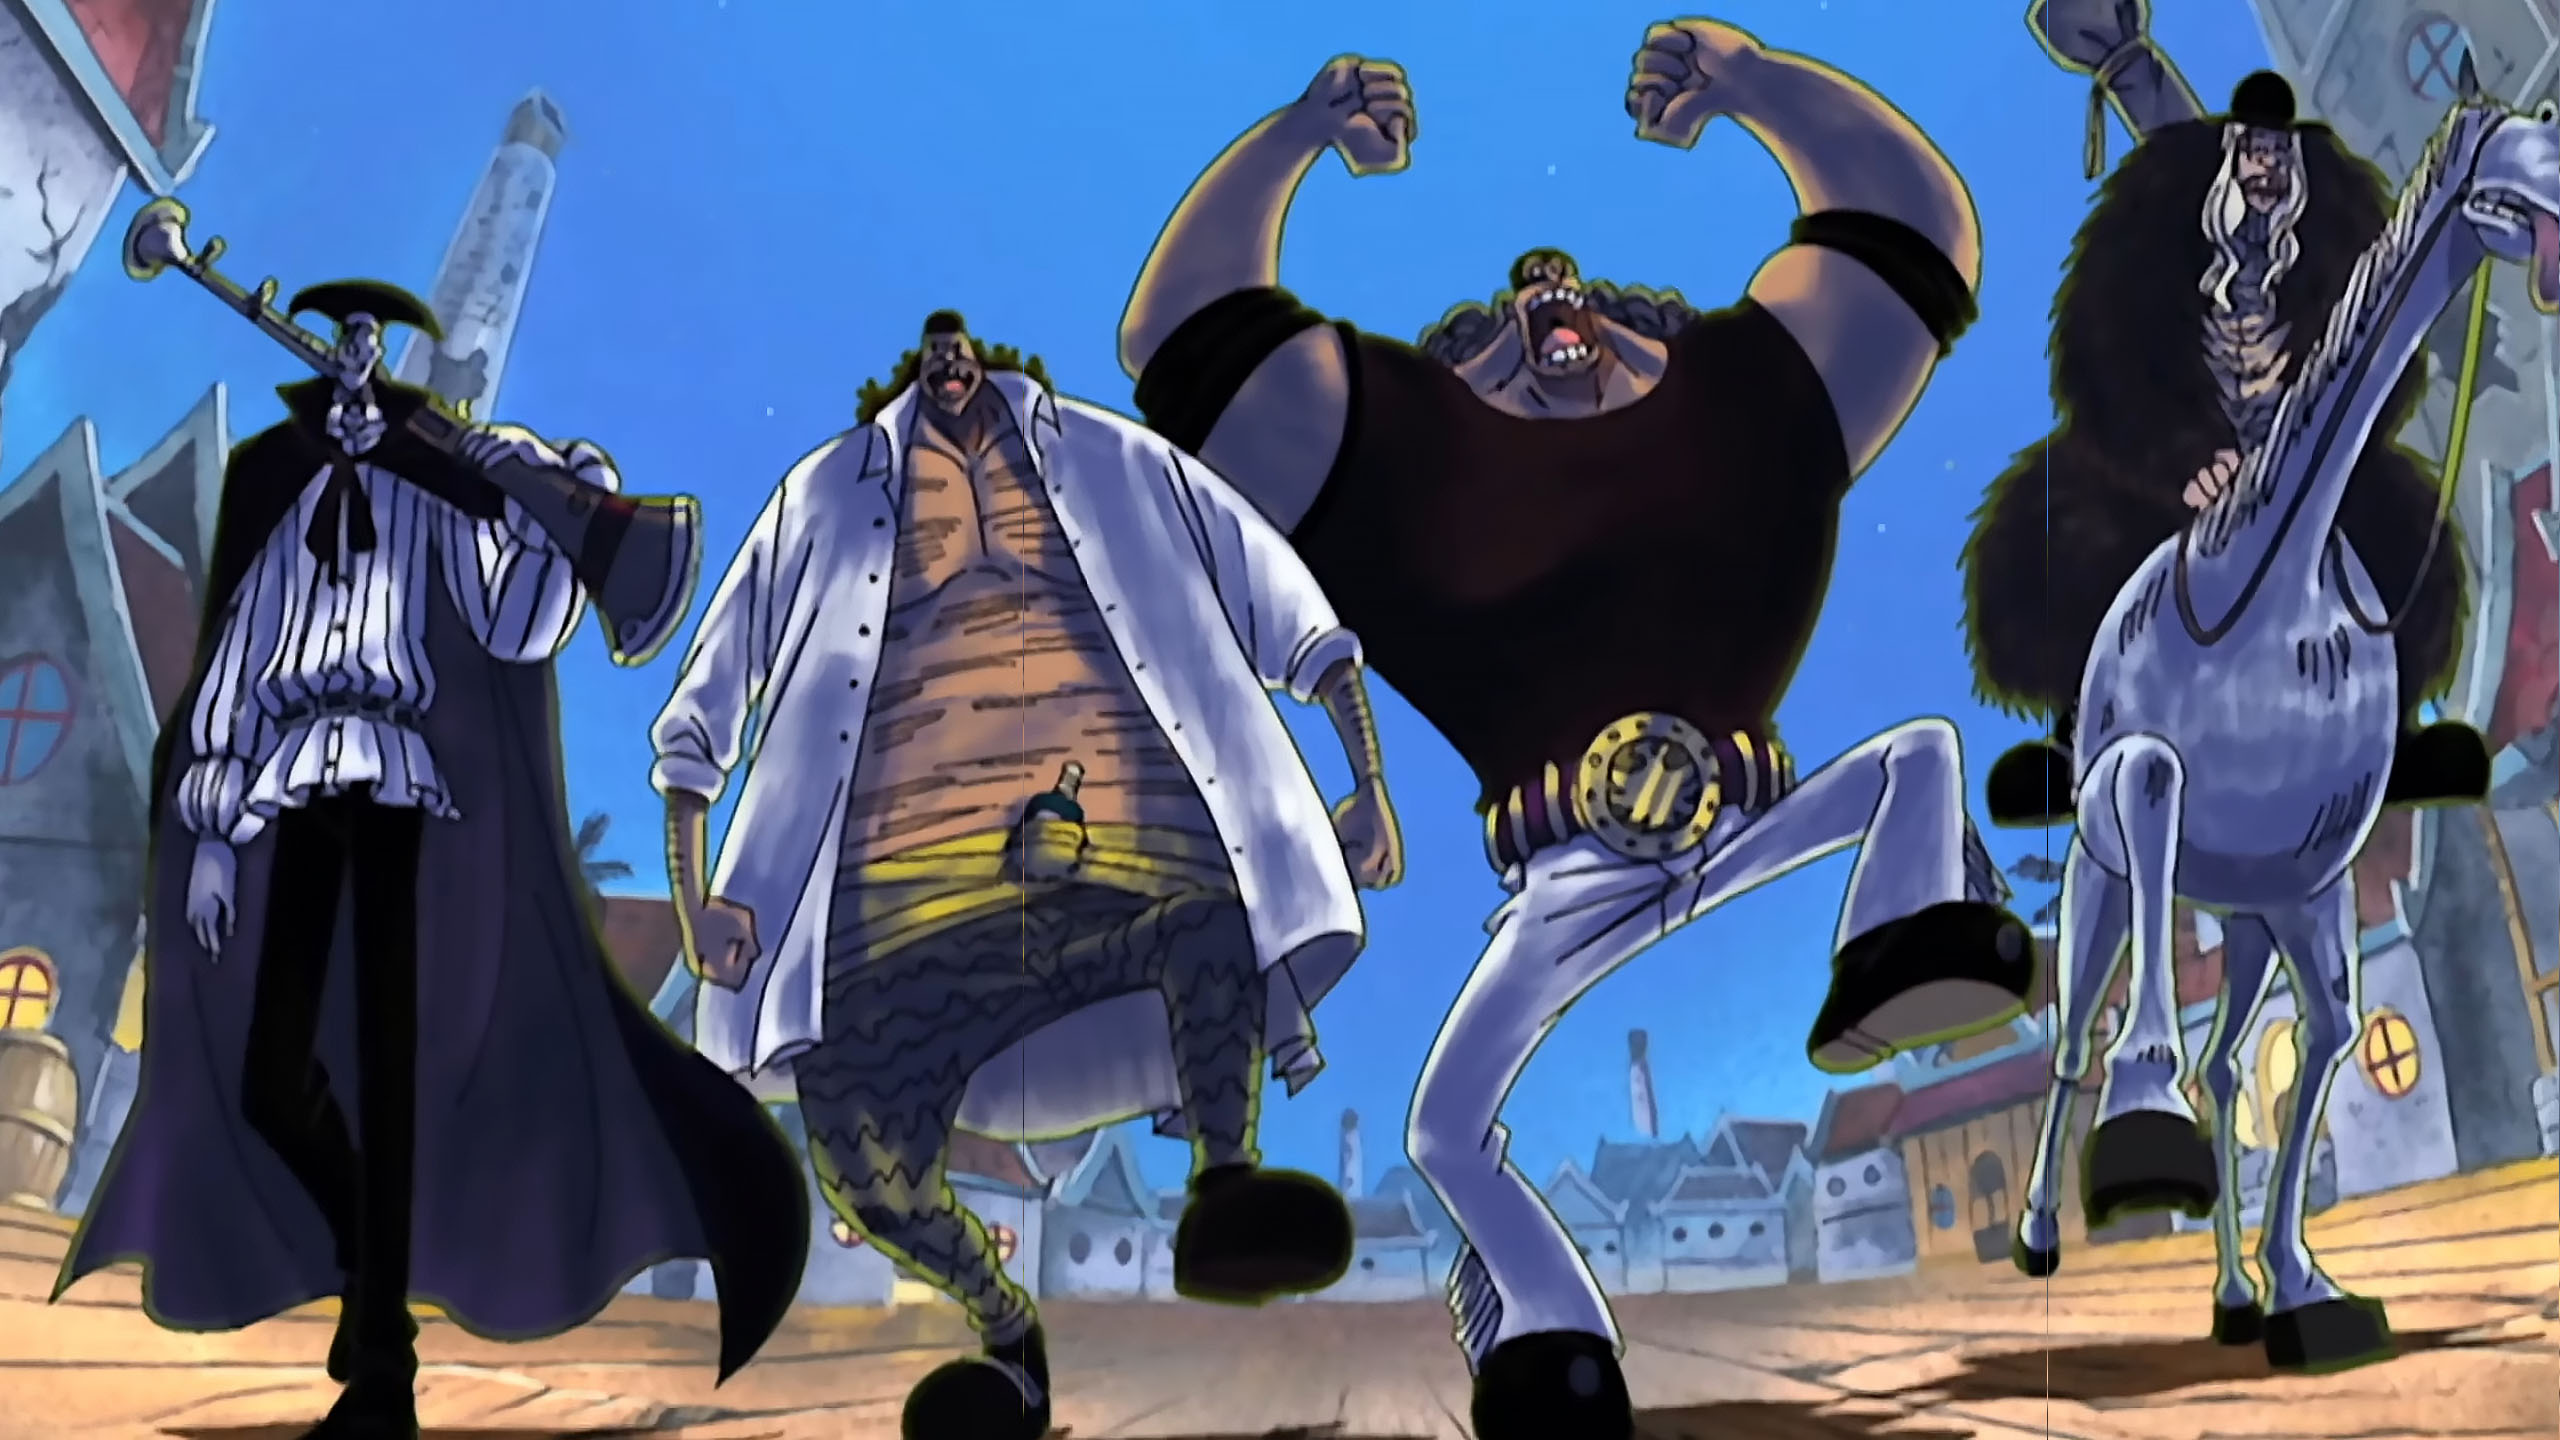 One Piece: The 10 Best Episodes